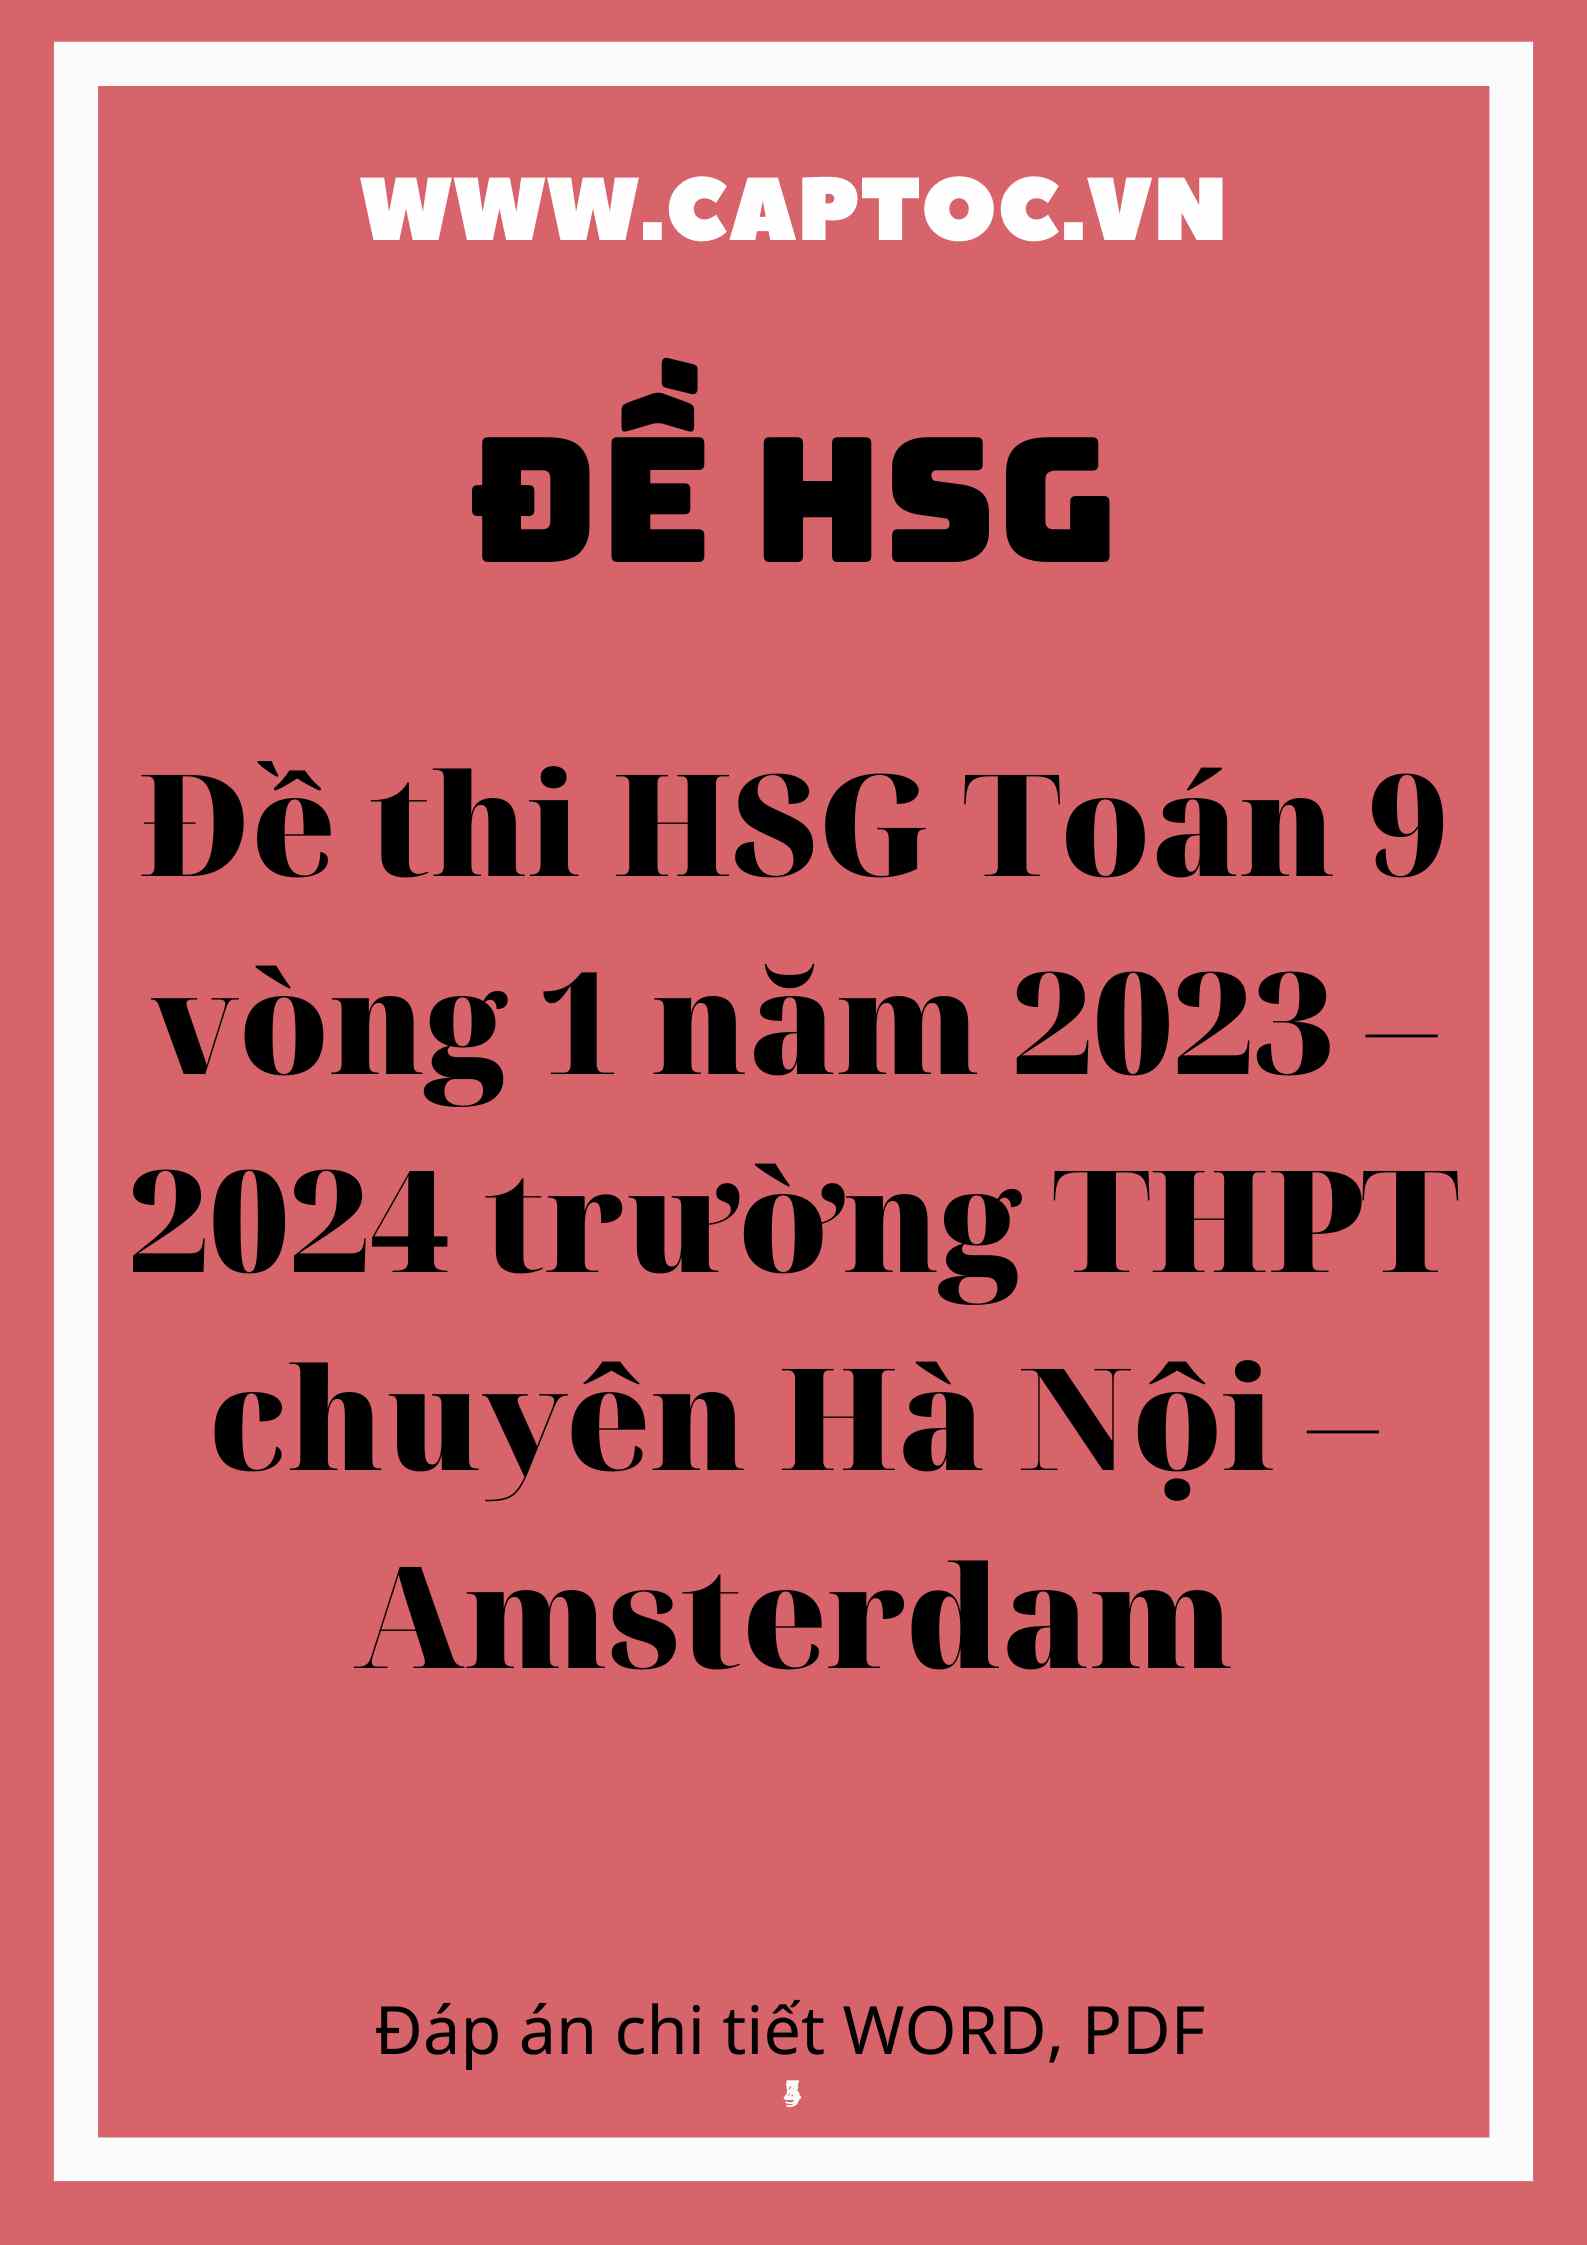 Đề thi HSG Toán 9 vòng 1 năm 2023 – 2024 trường THPT chuyên Hà Nội – Amsterdam